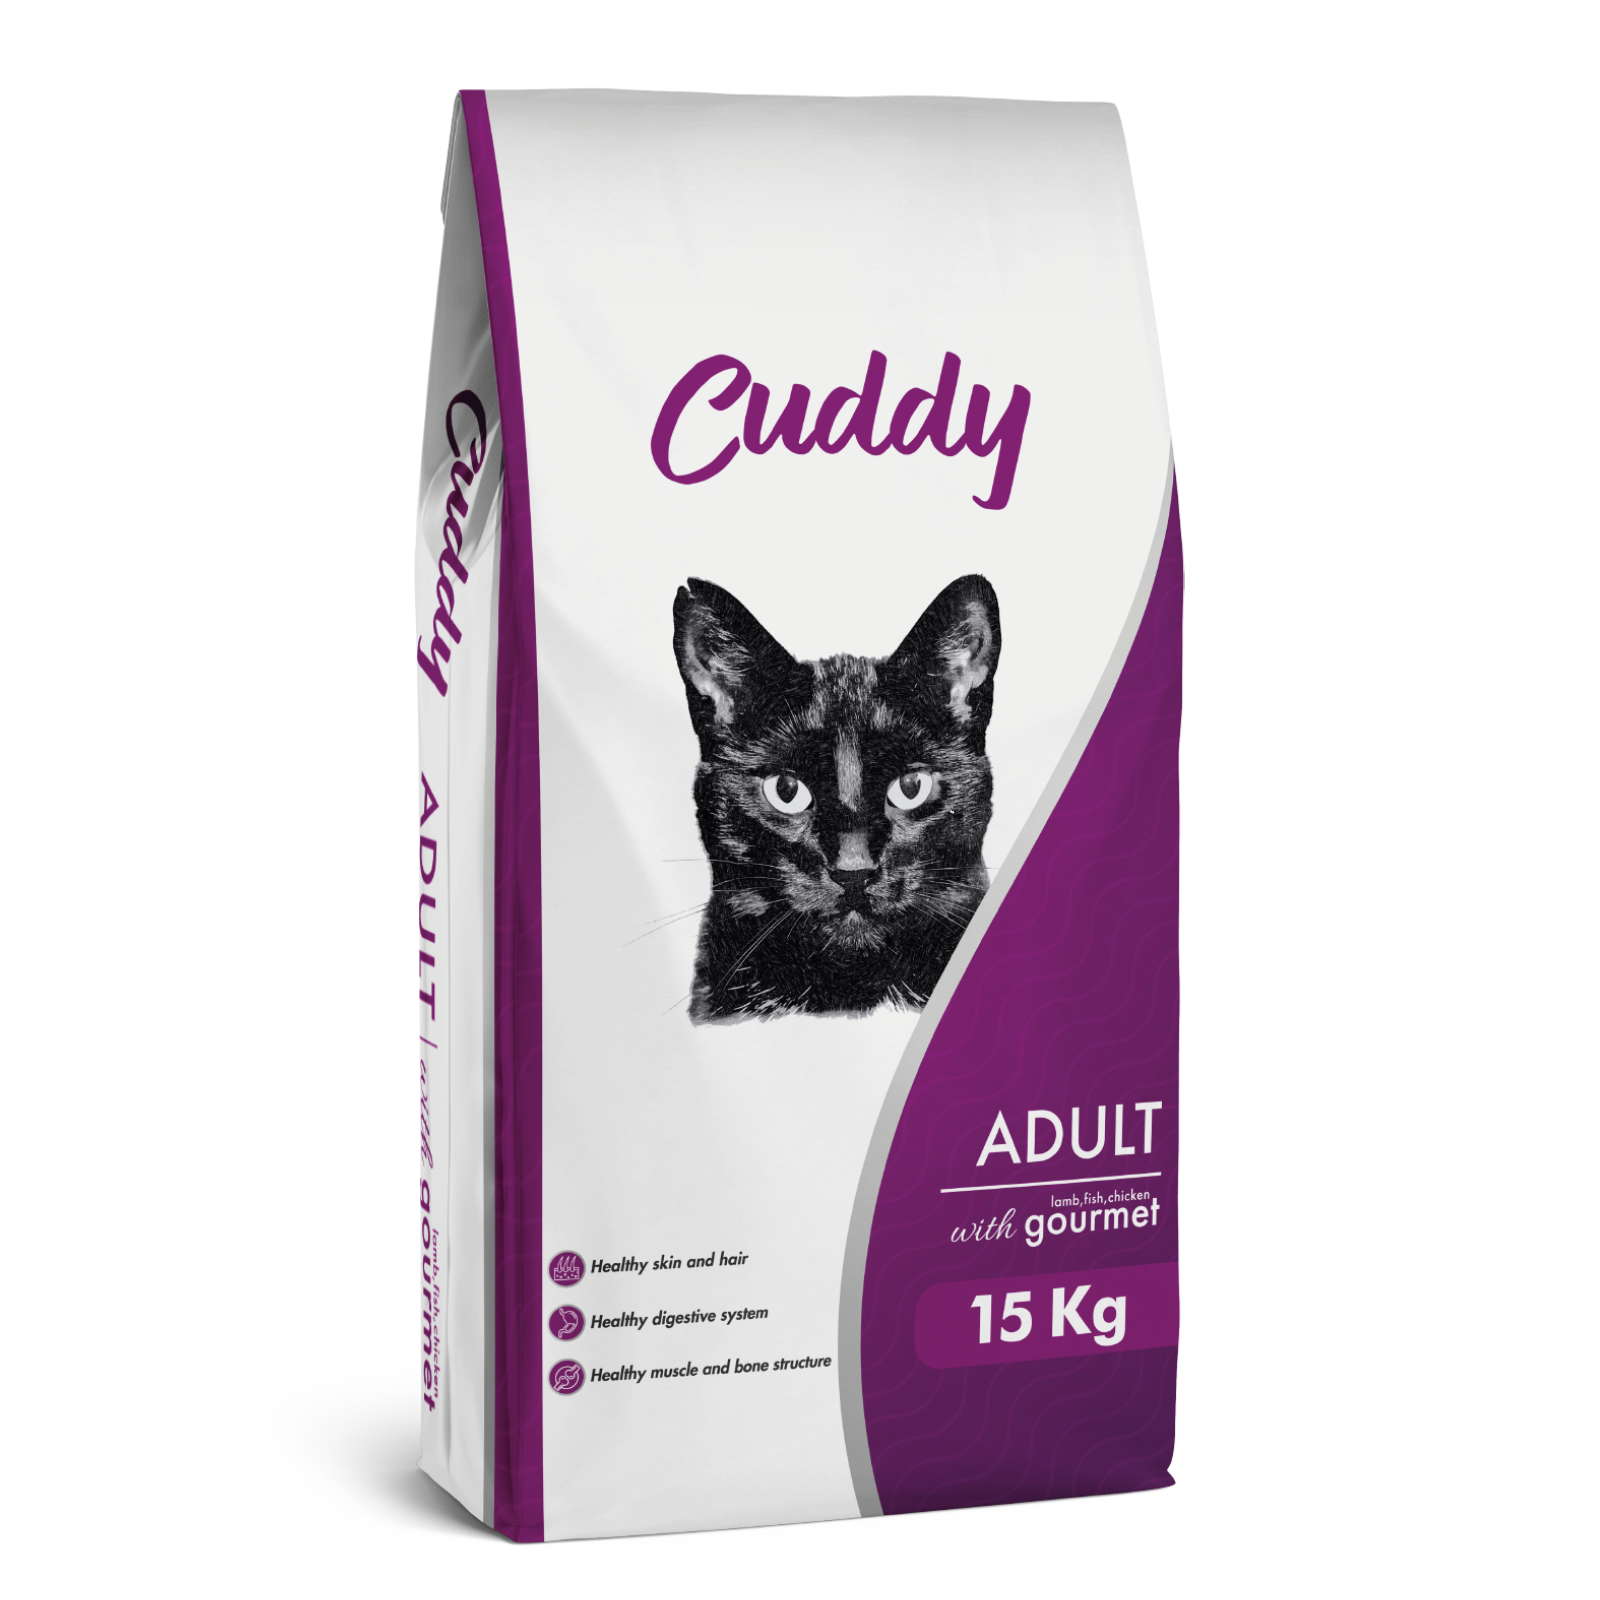 Cuddy Yetişkin Kedi Maması Gurme 15 KG